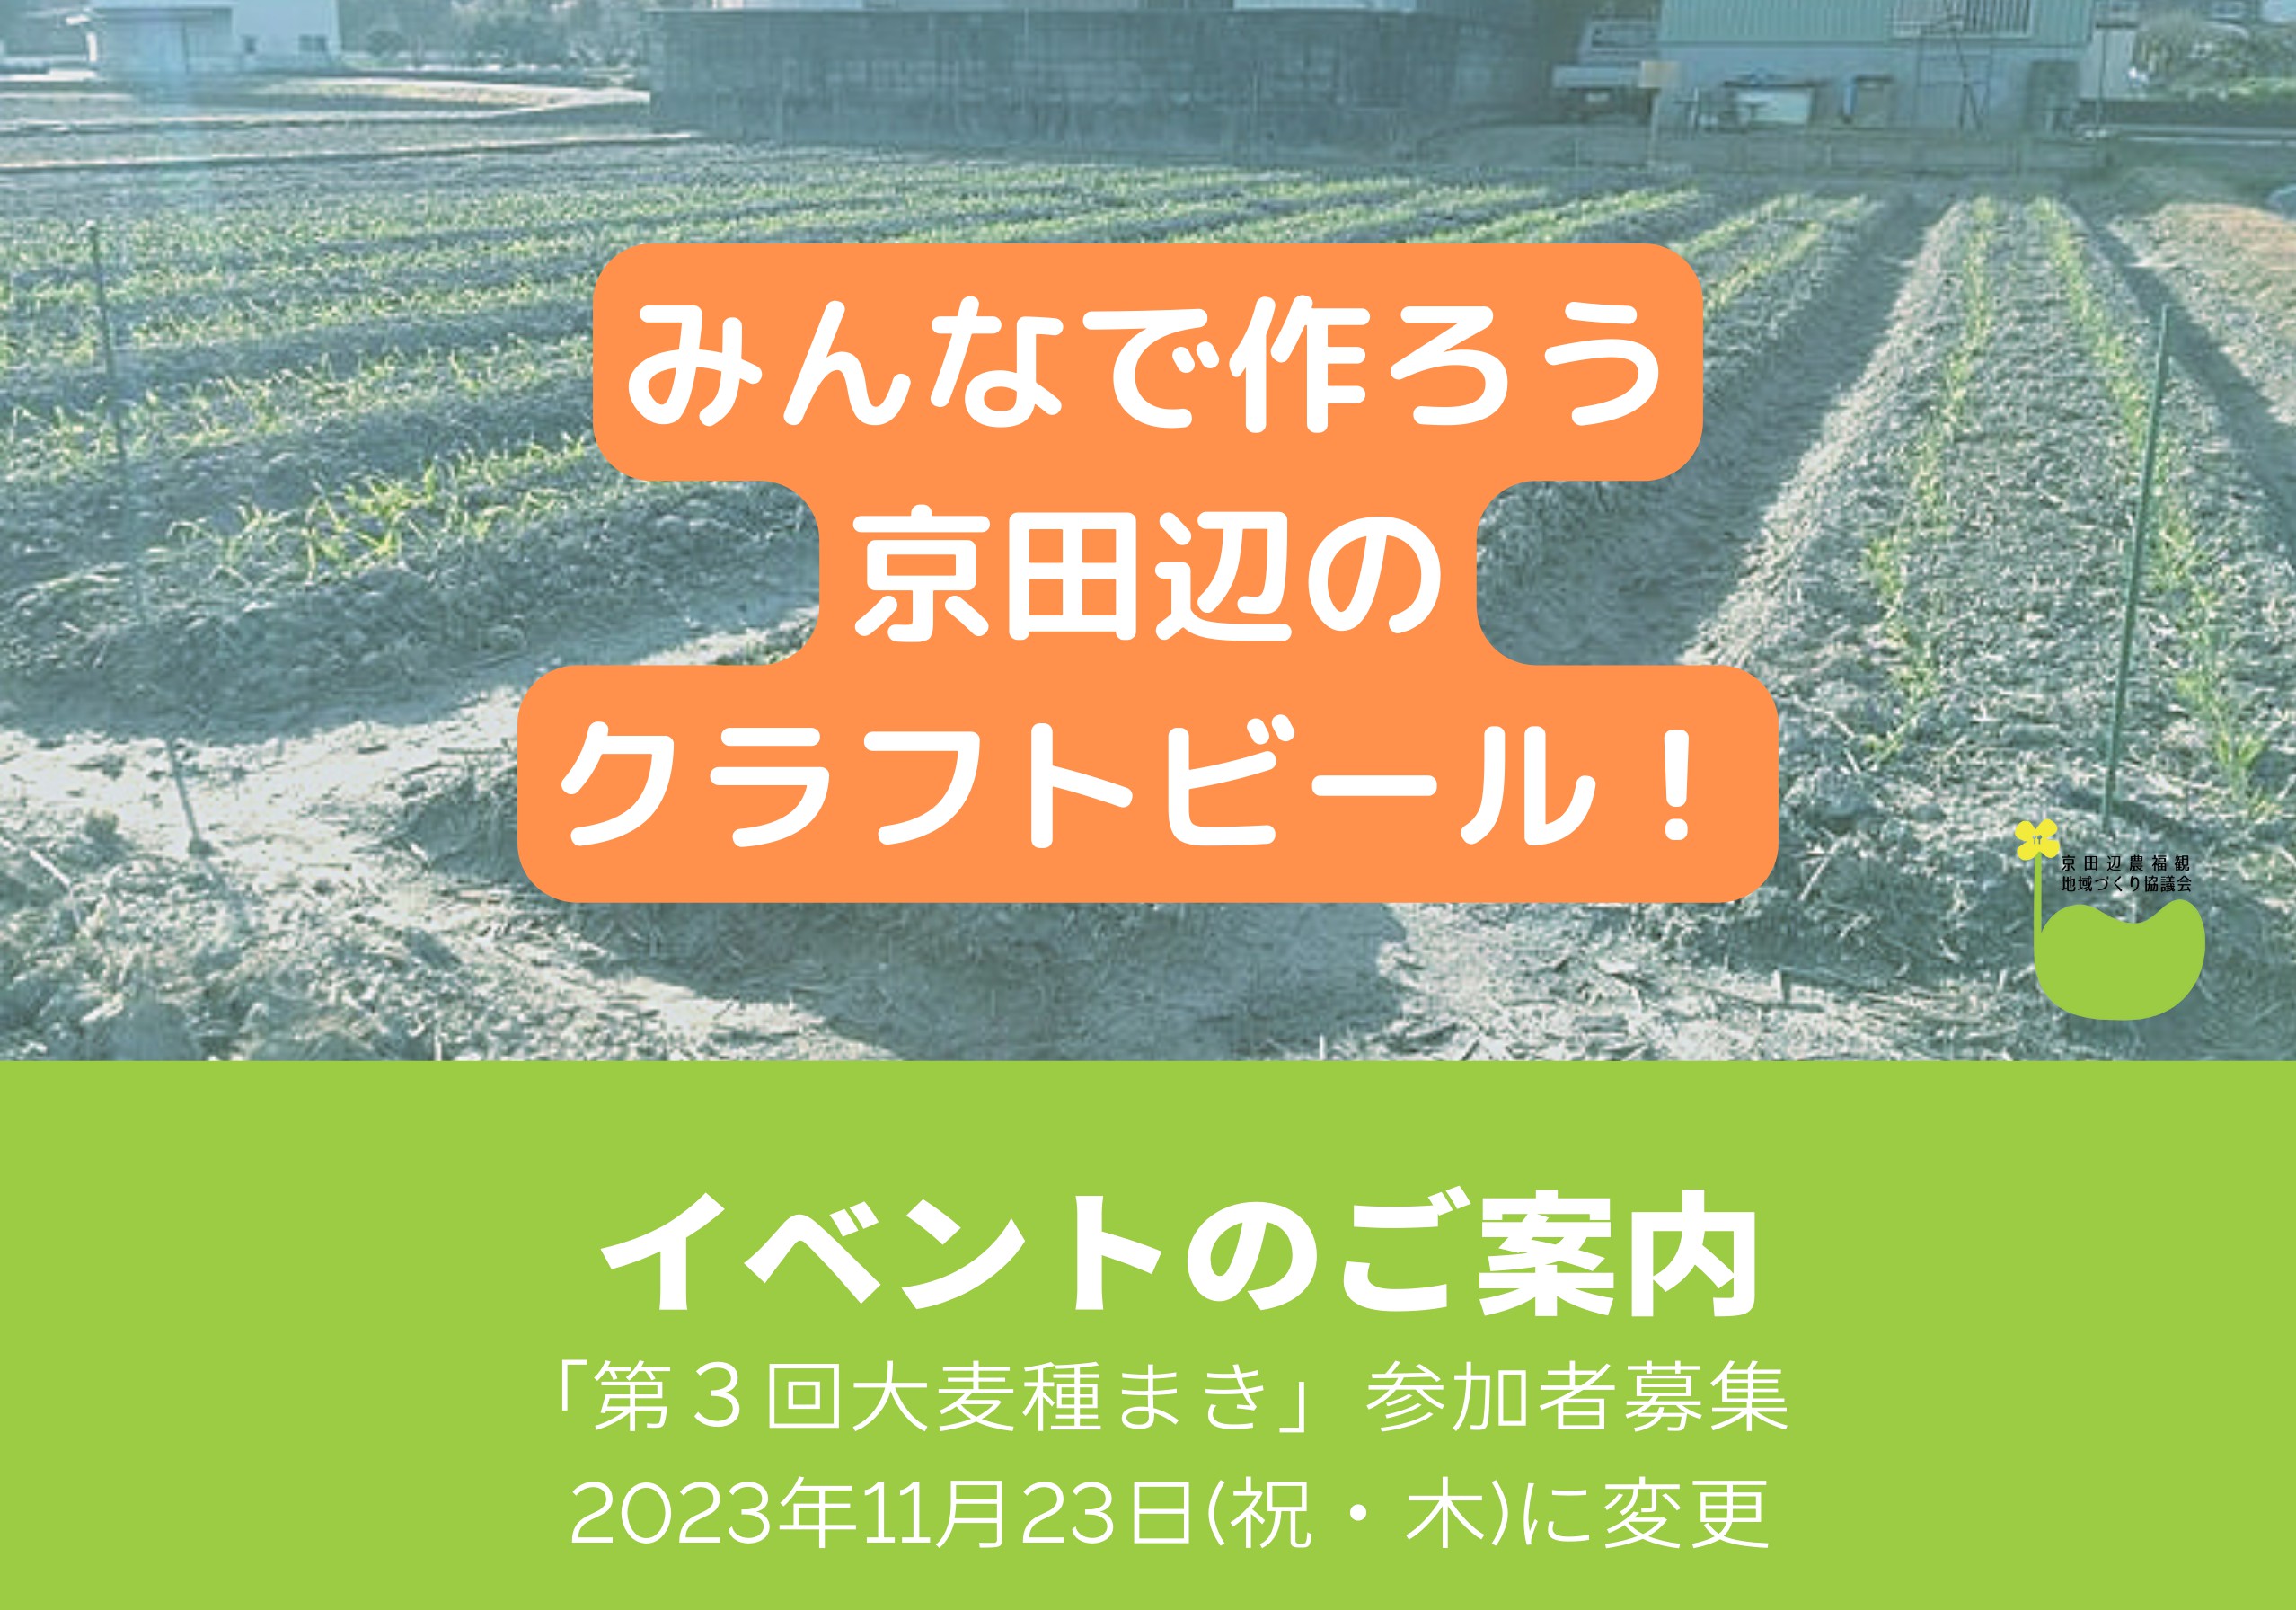 2023年11月23日(祝・木)に変更！「第3回大麦種まき」イベントのお知らせの画像